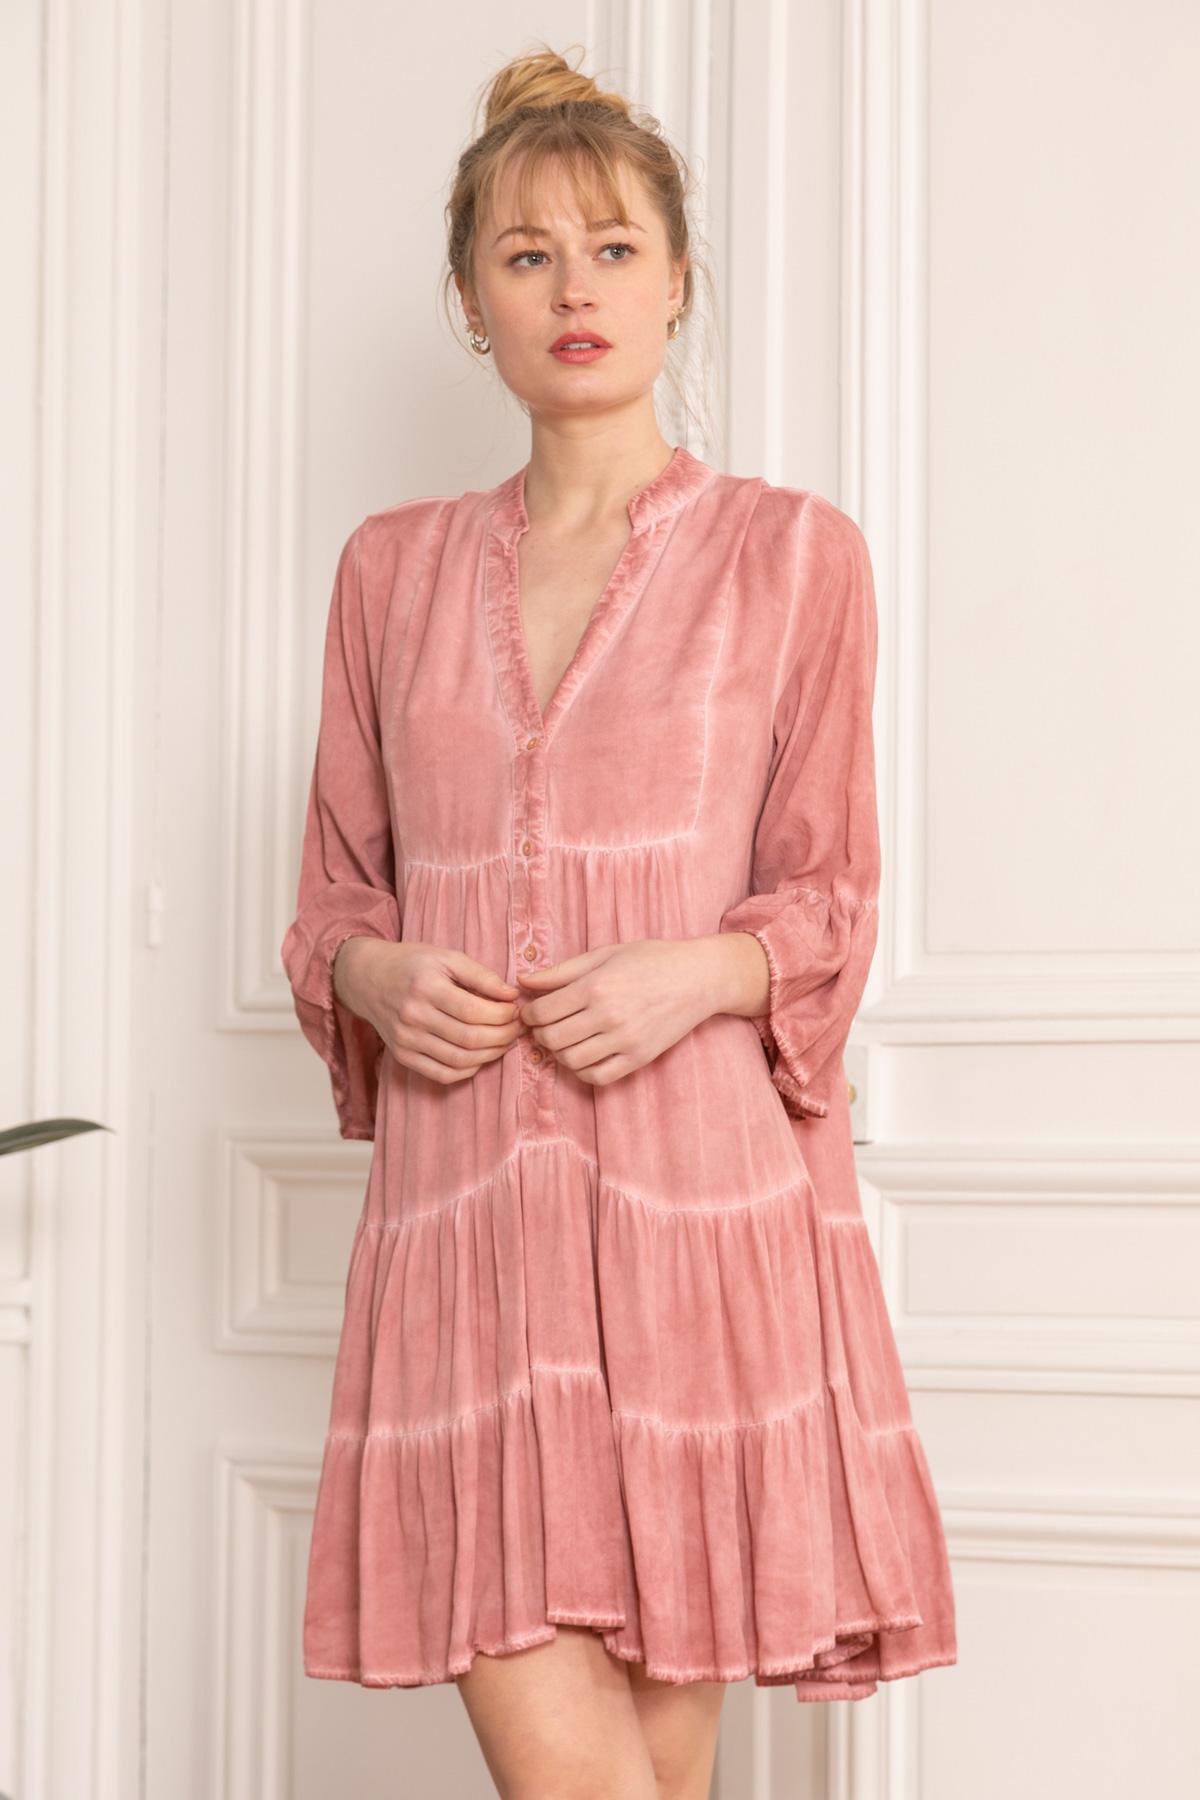 Vestidos cortos Mujer Pink LAST QUEEN 8985-0036 #c Efashion Paris